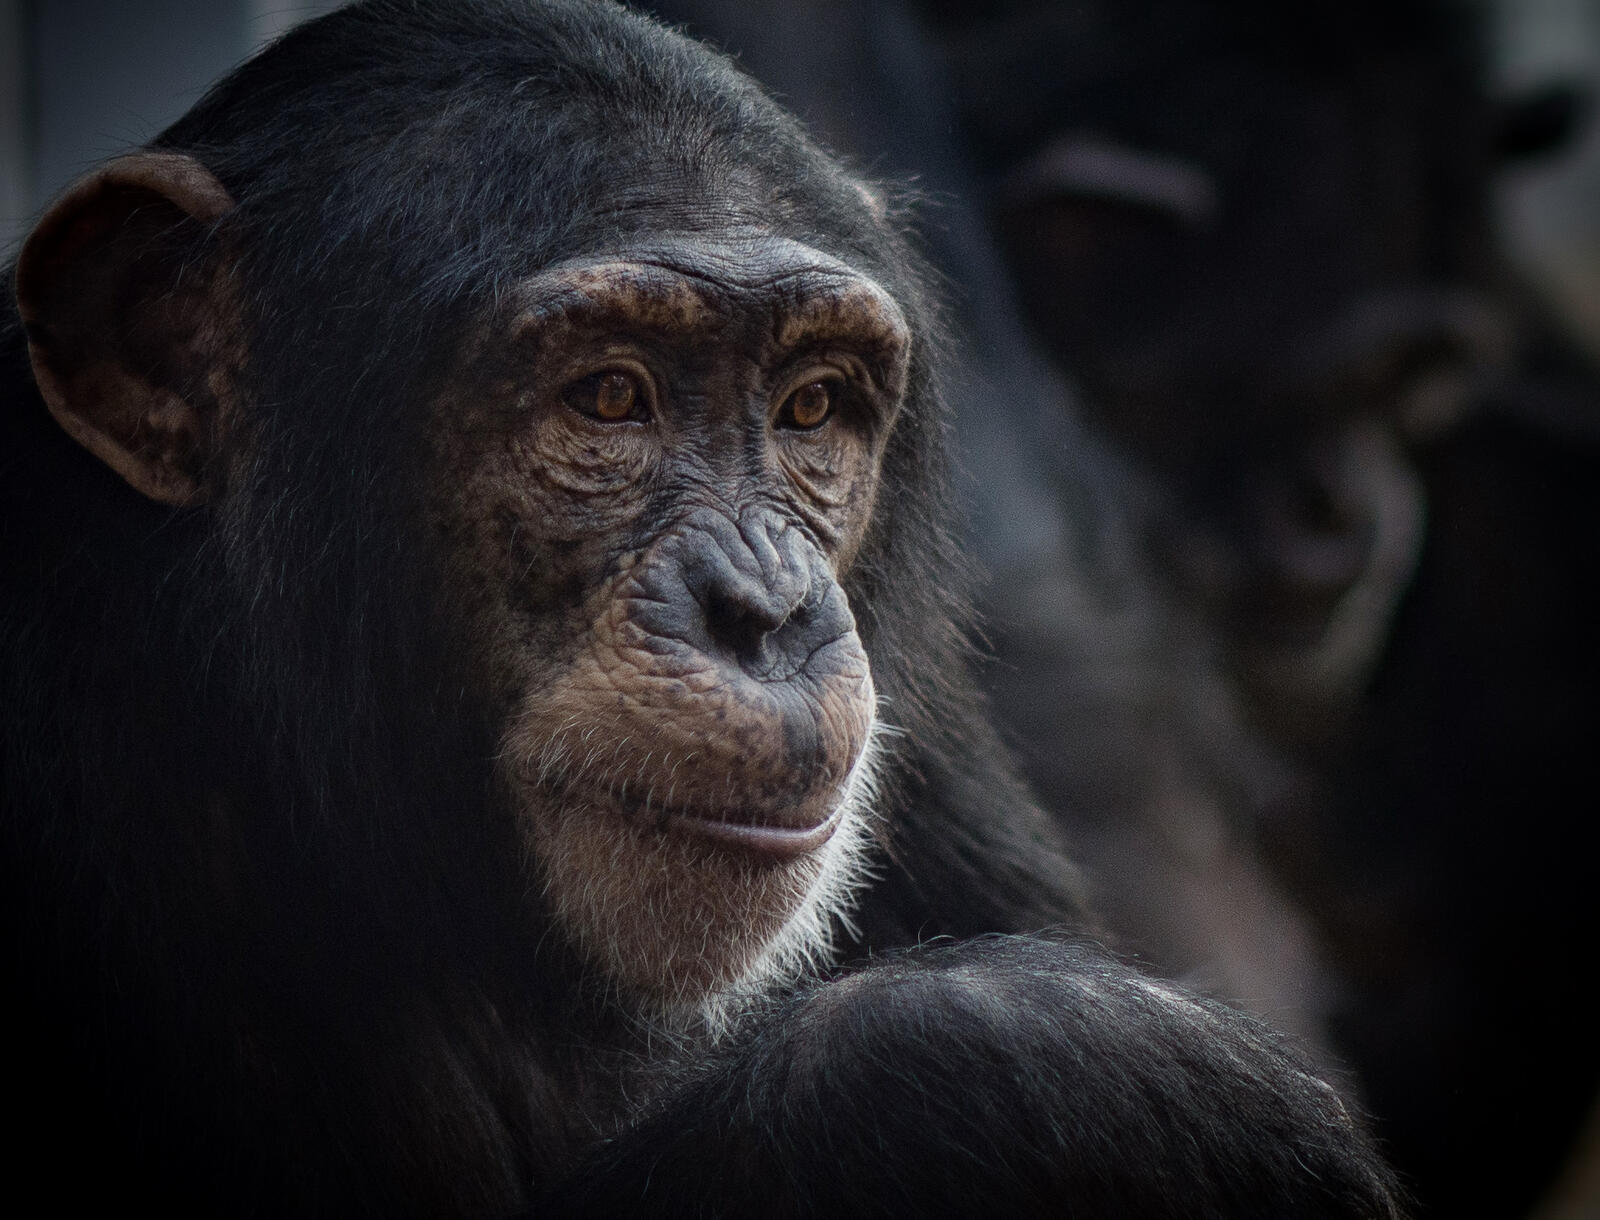 Обои Шимпанзе обезьяна род из семейства гоминид на рабочий стол